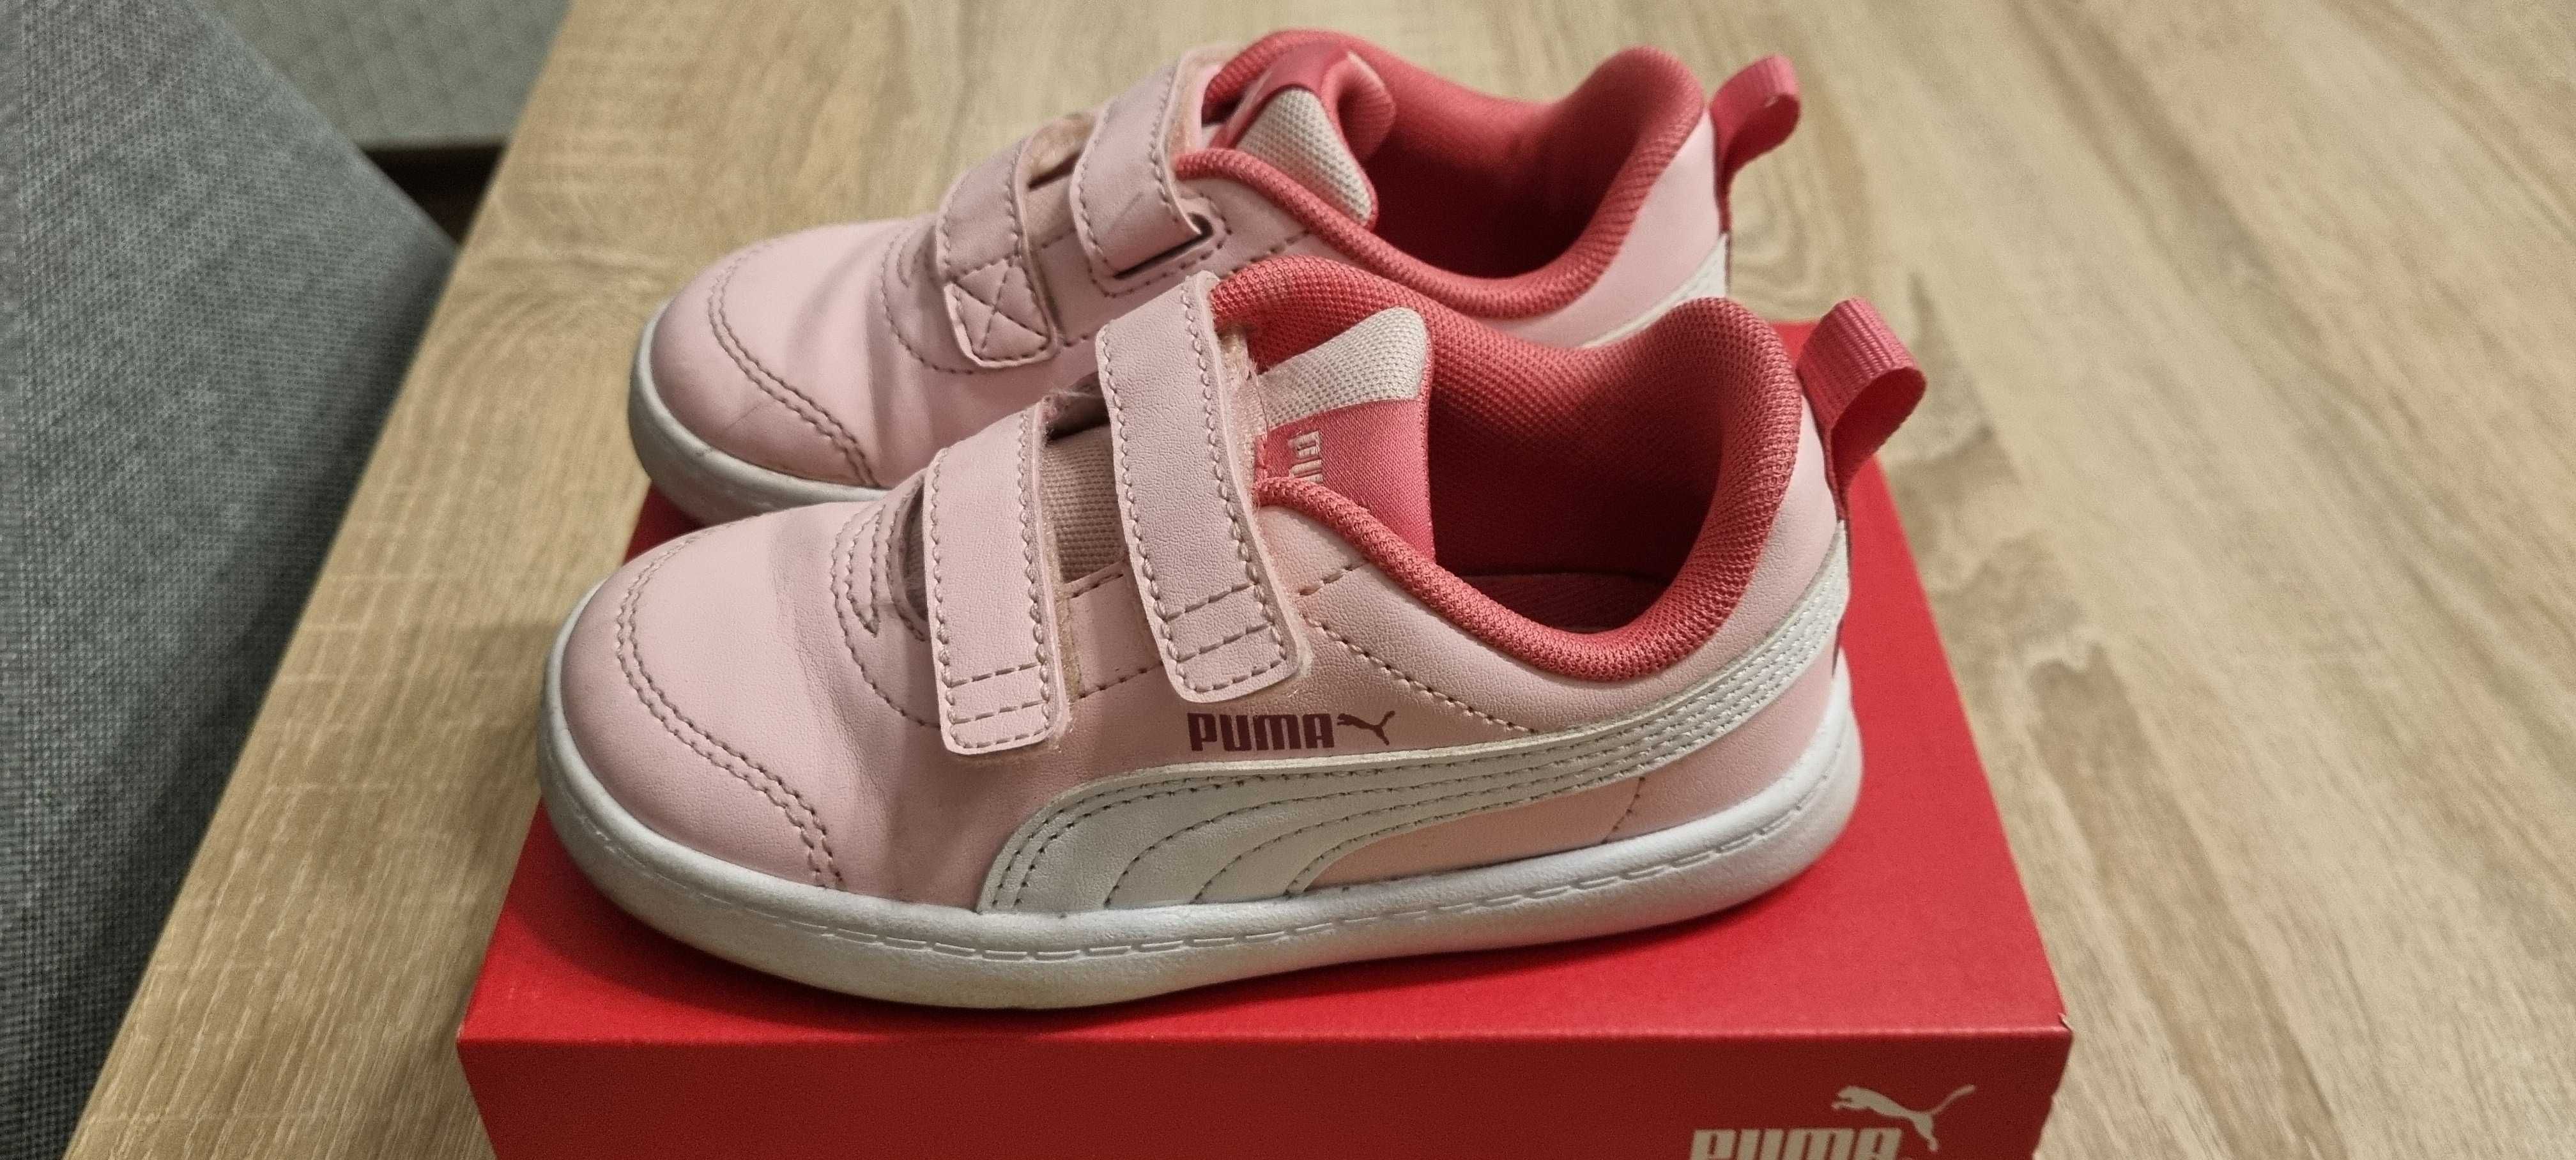 Adidasy Puma dla dziewczynki różowe rozm. 24